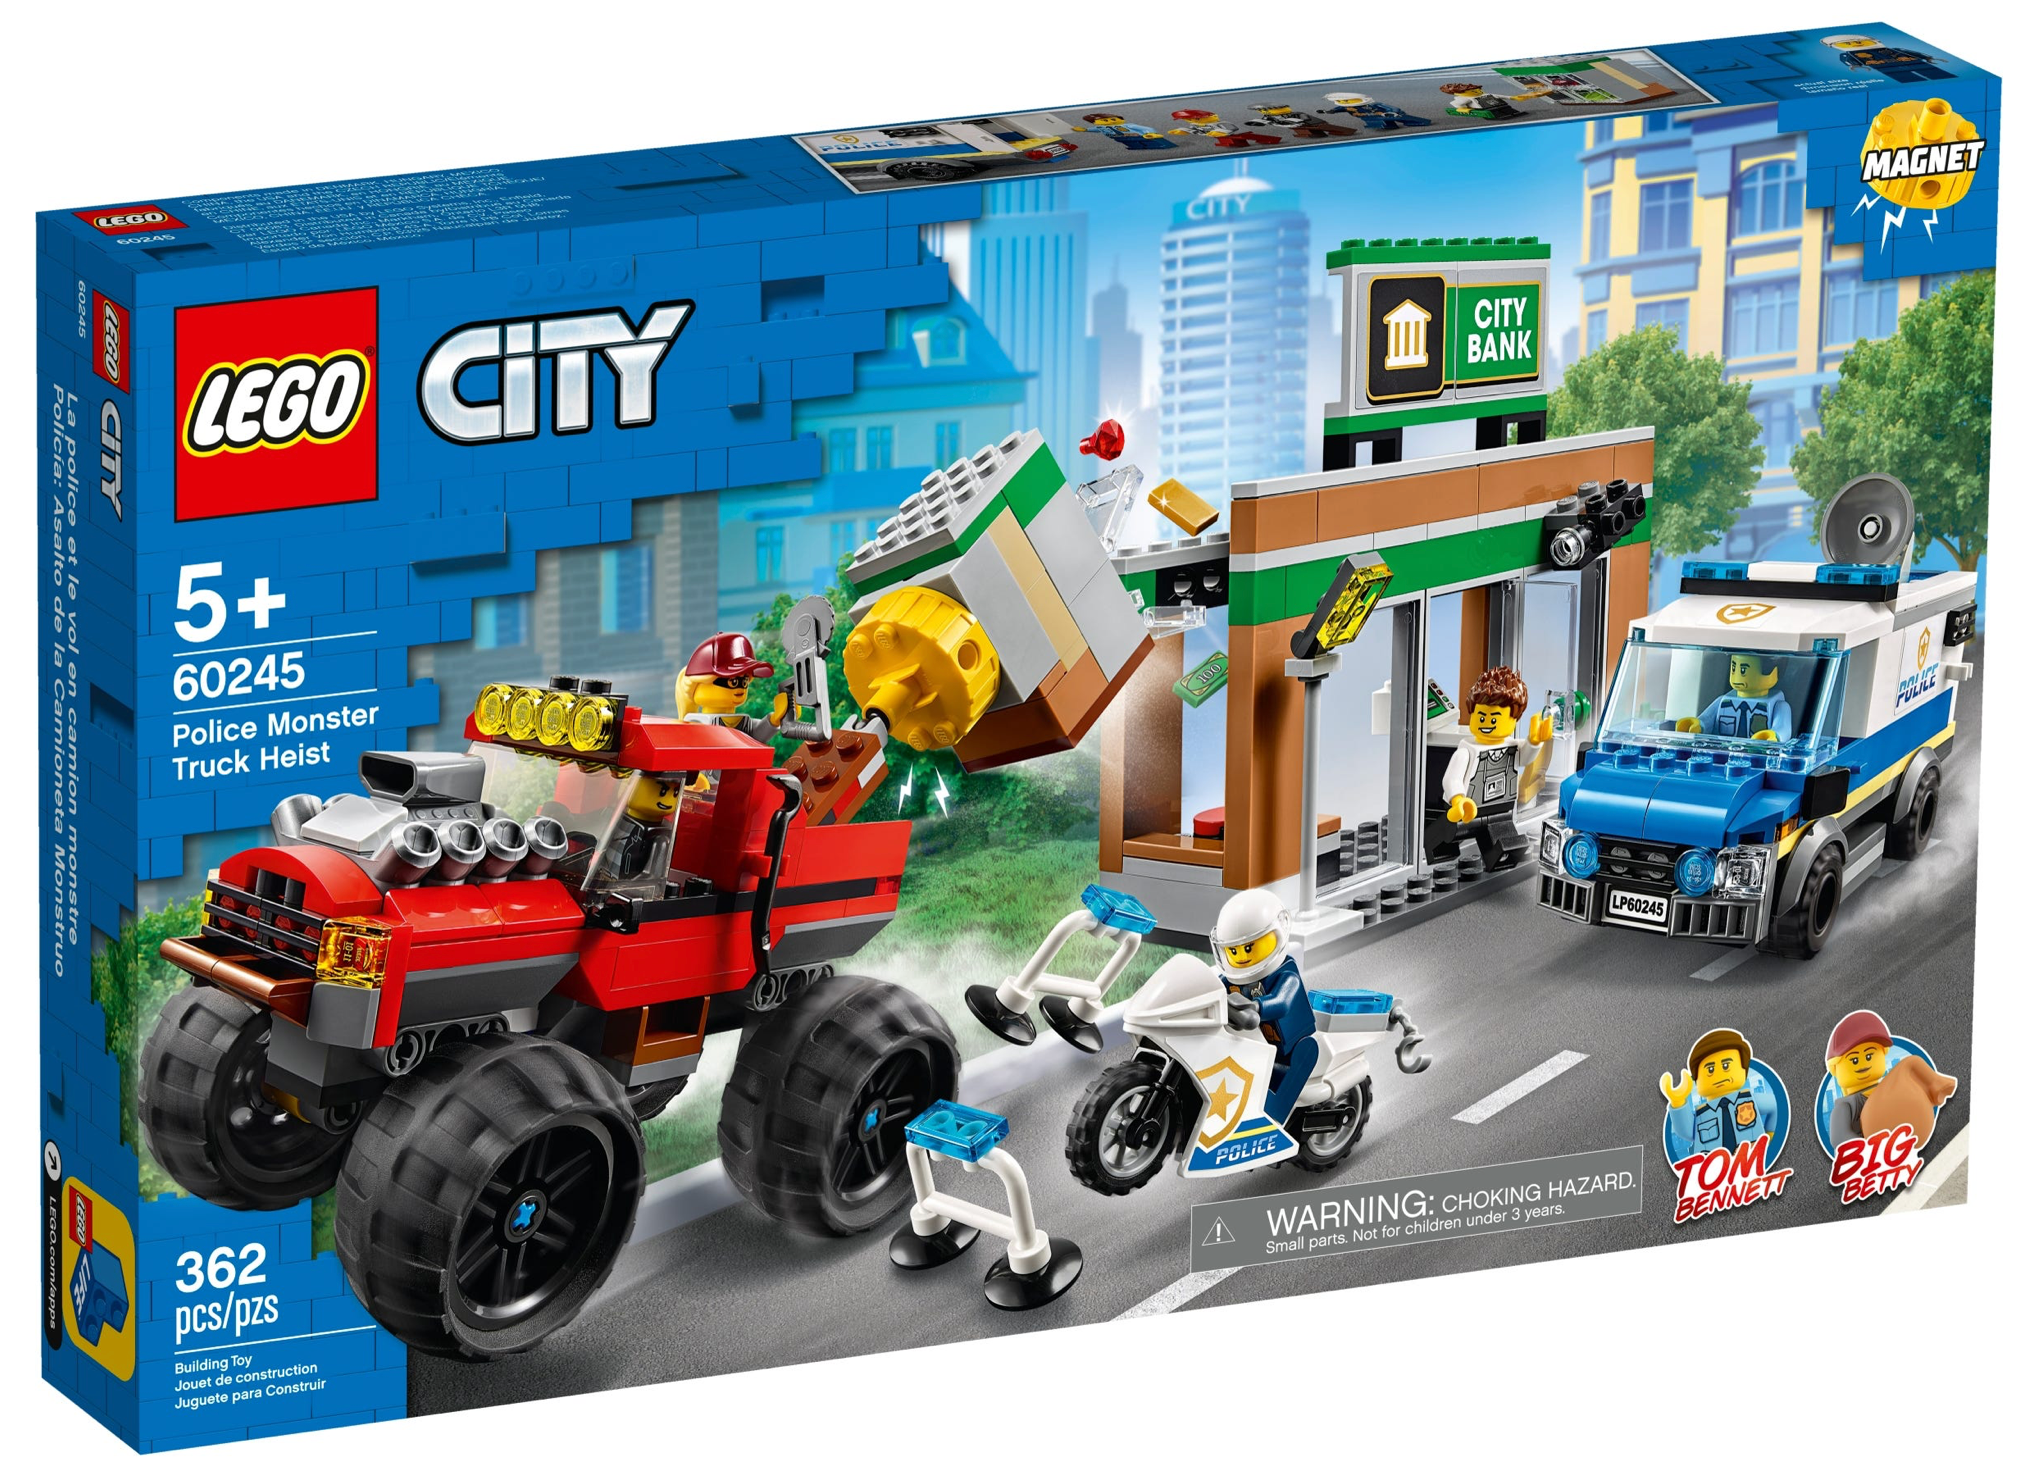 LEGO: City - Police Monster Truck Heist